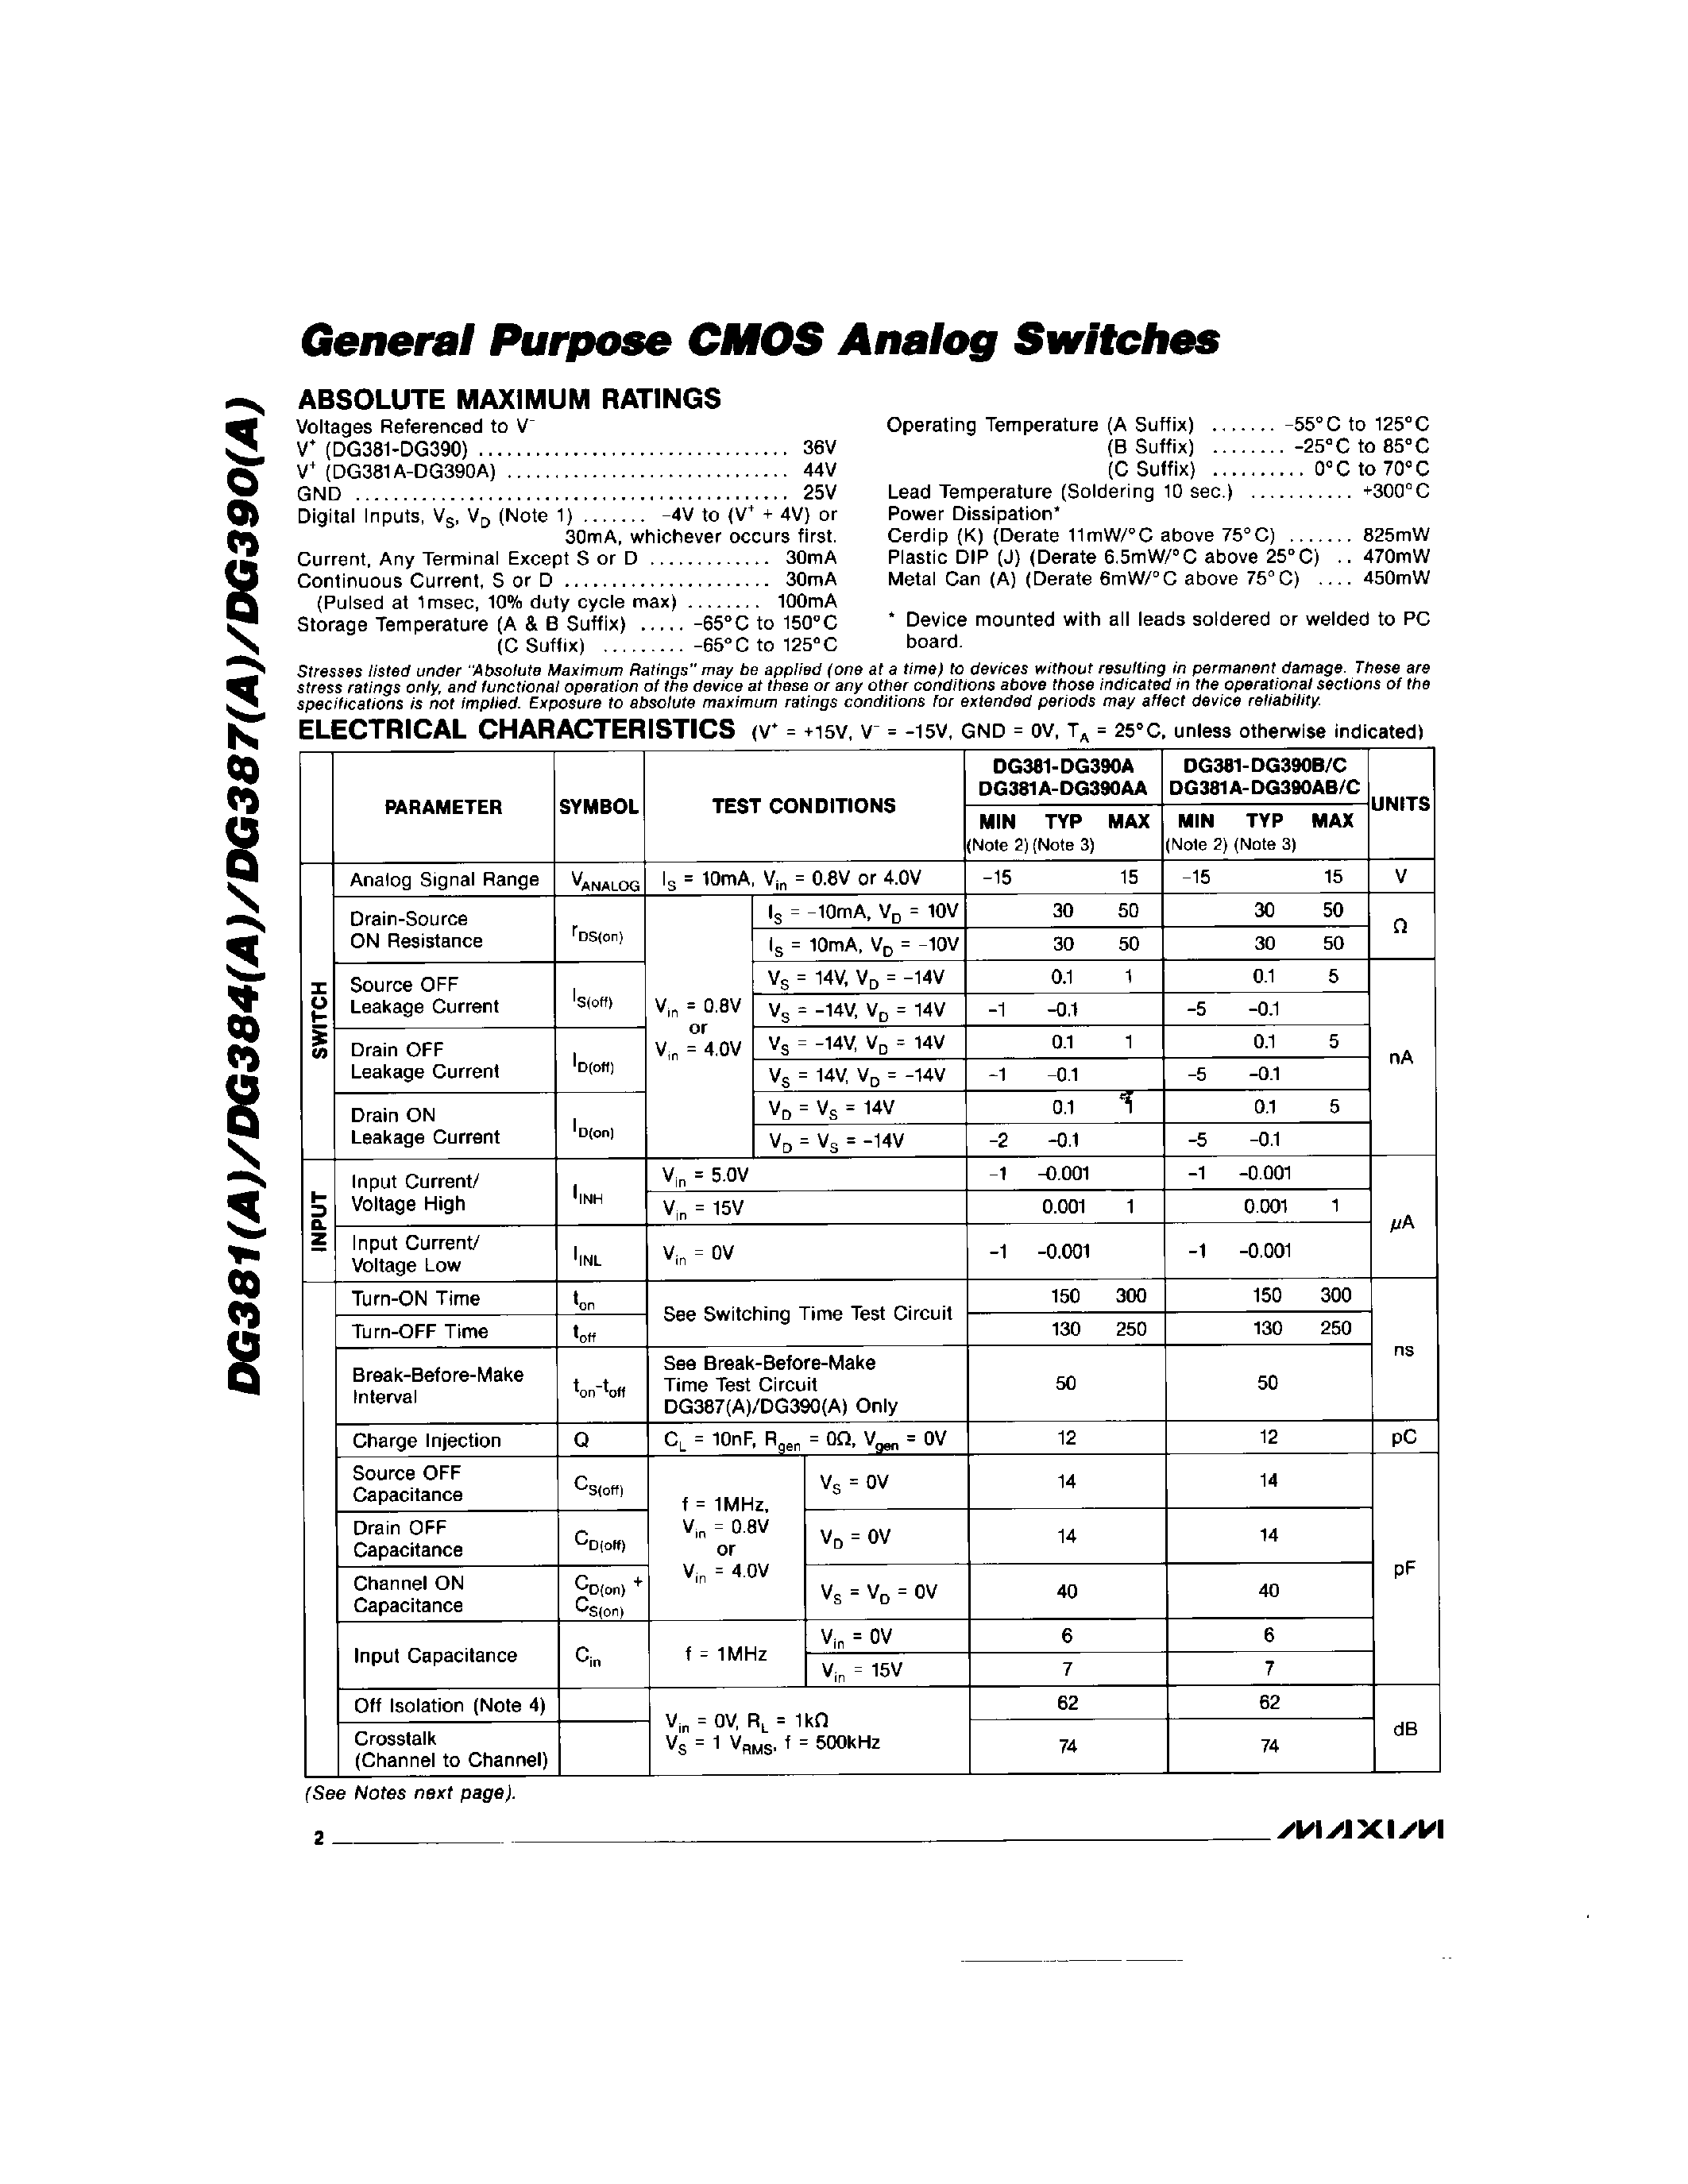 Datasheet DG384C/D - General Purpose CMOS Analog Switches page 2